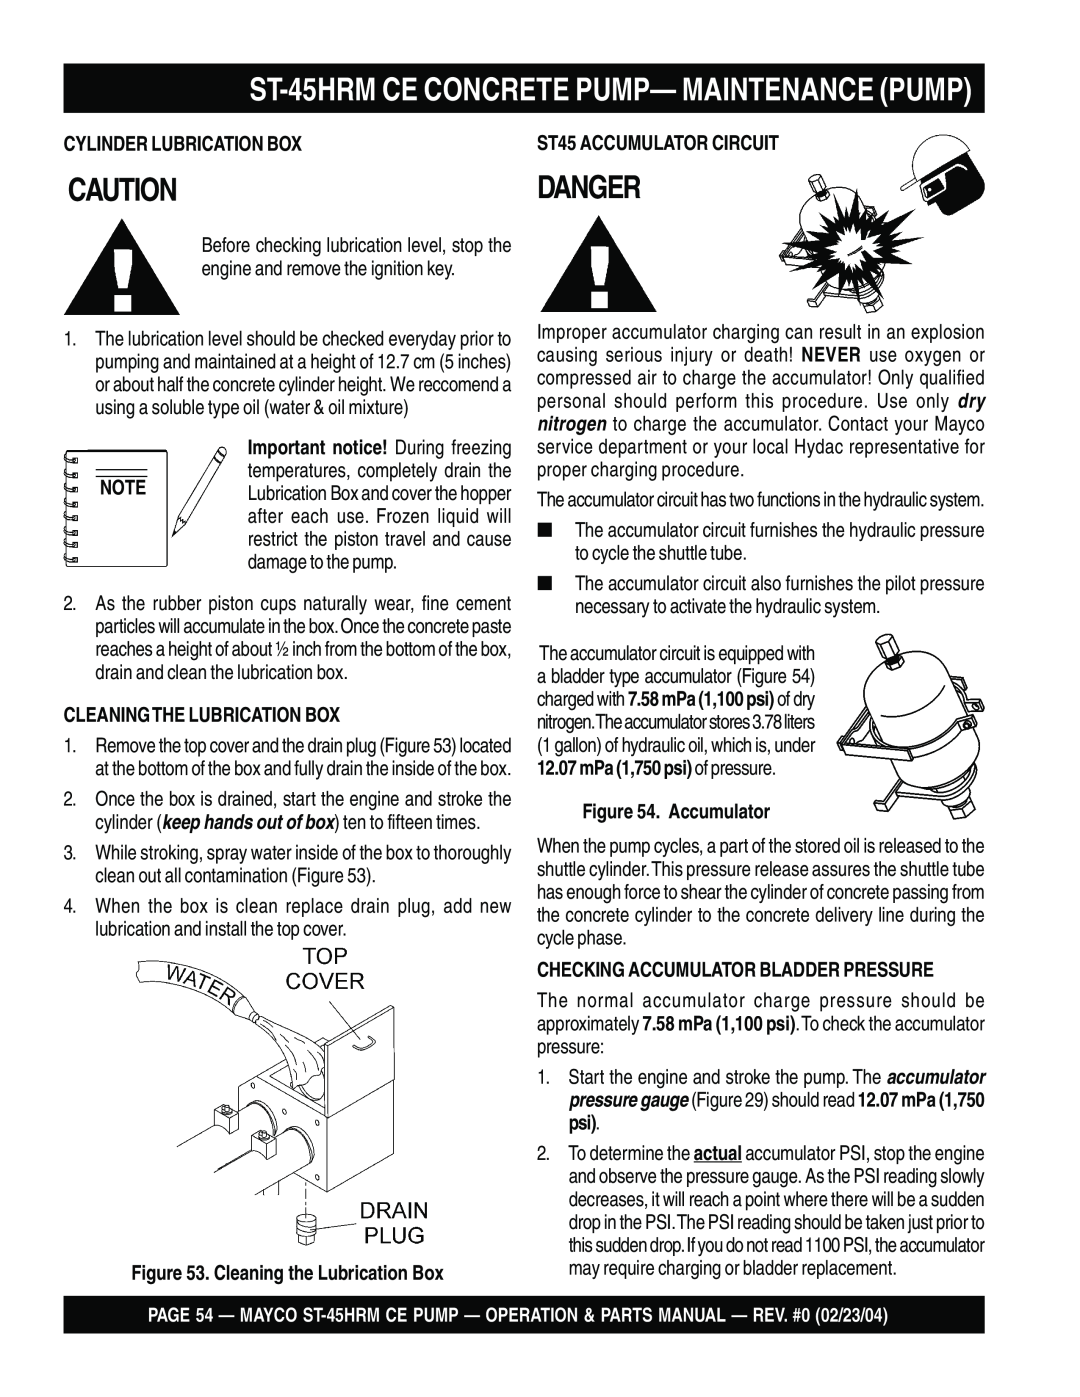 Multiquip ST-45HRM CE manual Danger, ST-45HRMCE CONCRETE PUMP— MAINTENANCE PUMP, Cylinder Lubrication Box, Accumulator 